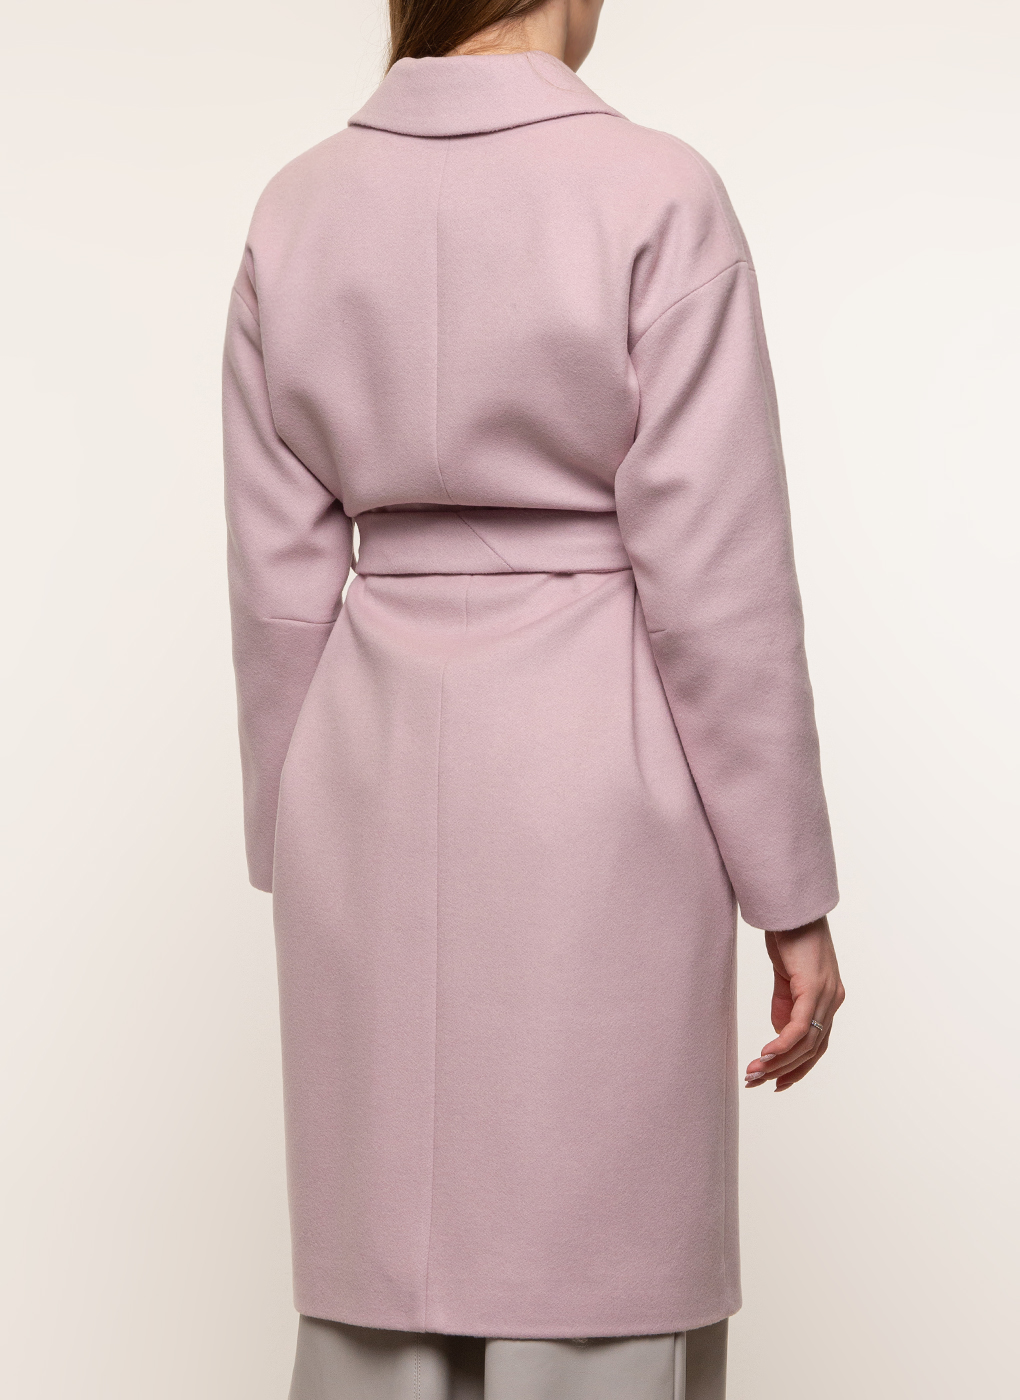 Пальто женское idekka 45536 розовое 44 RU